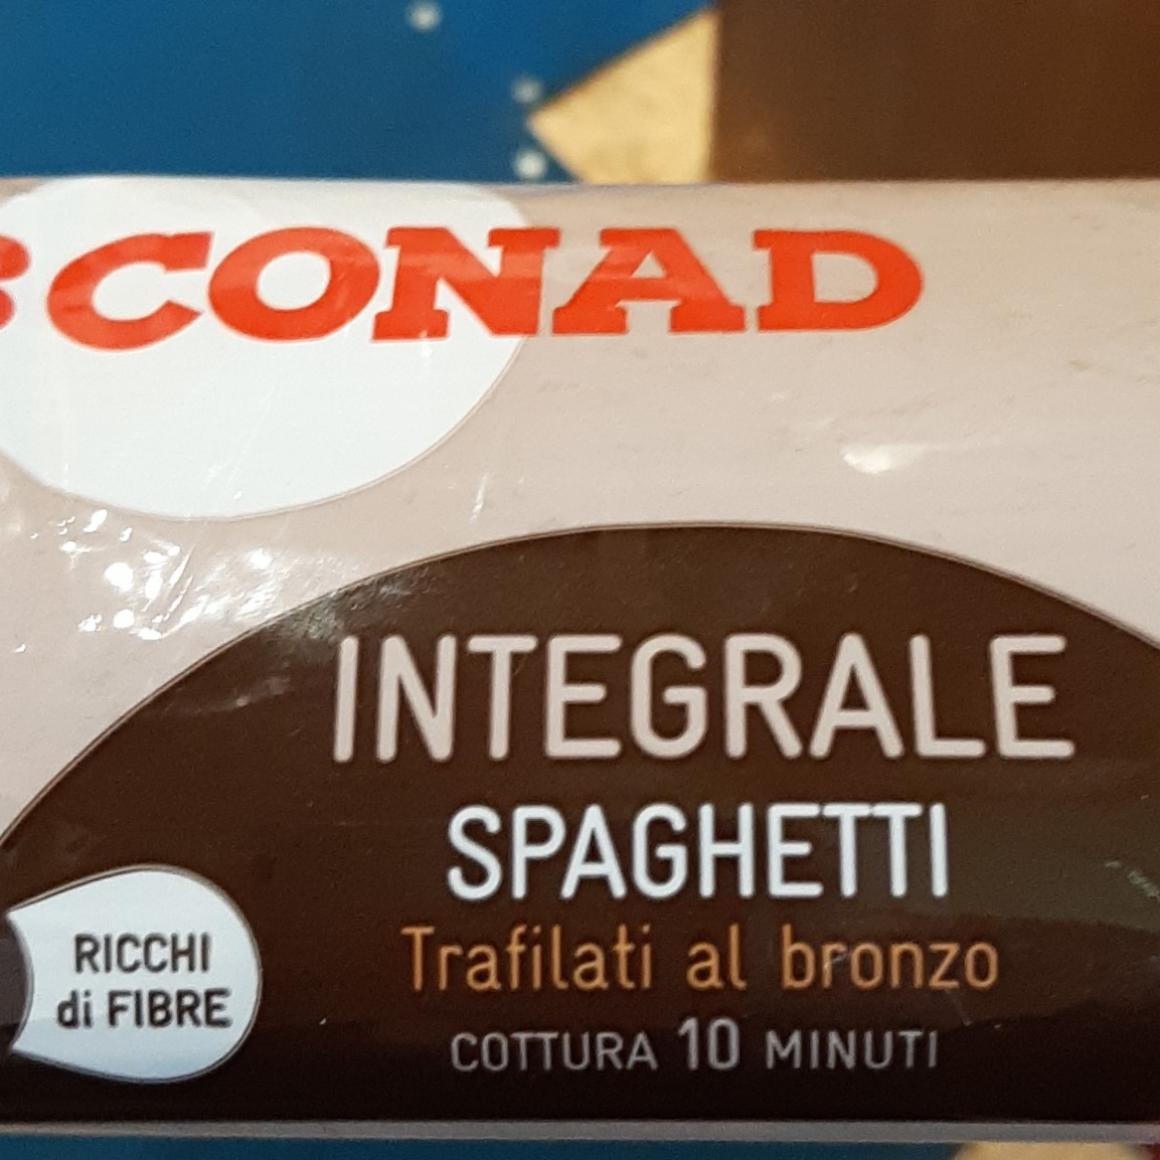 Fotografie - Integrale spaghetti Conad